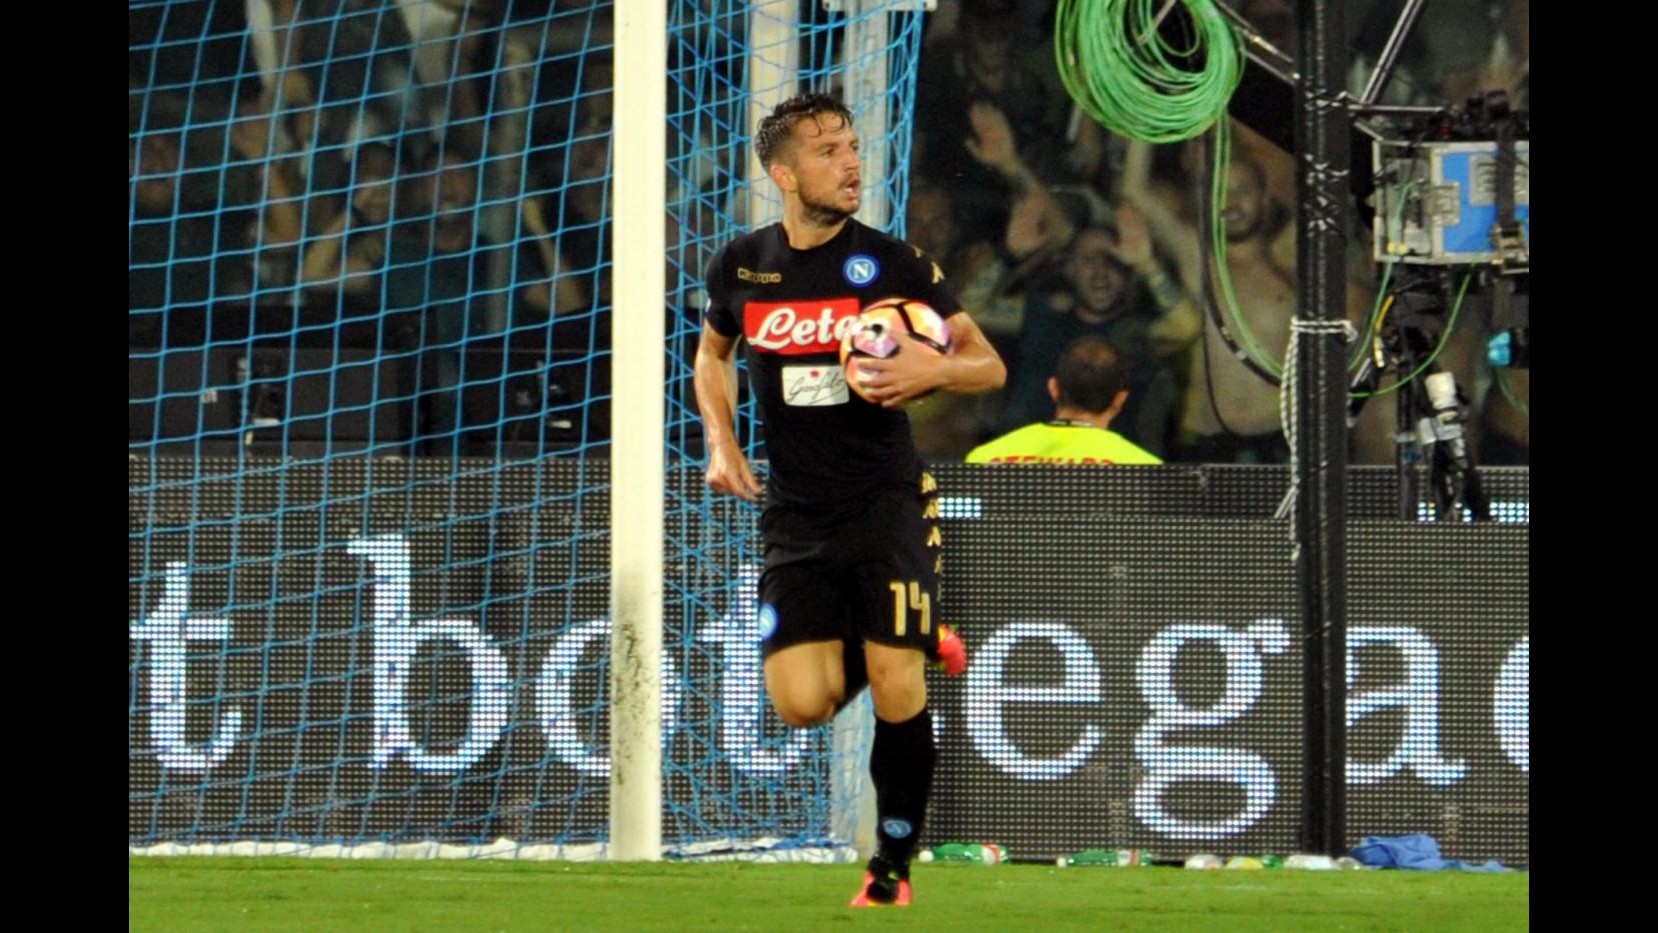 FOTO Pescara va in vantaggio di 2 gol, Napoli rimonta con Mertens